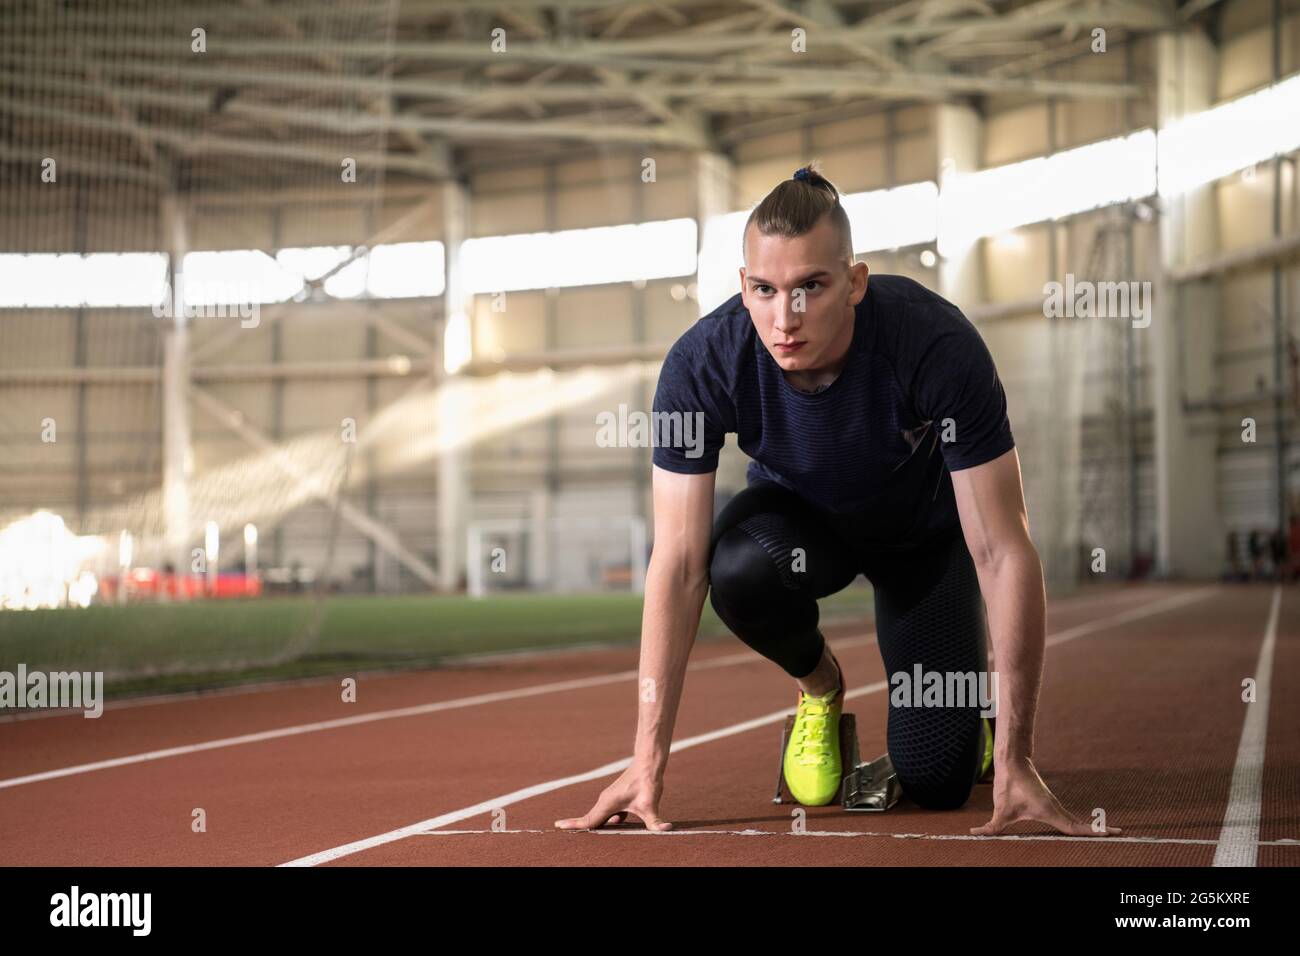 Fokussierter männlicher Athlet, der sich darauf vorbereitet, von der Startposition der Crouch-Mannschaft auf der Strecke im Stadion zu laufen Stockfoto